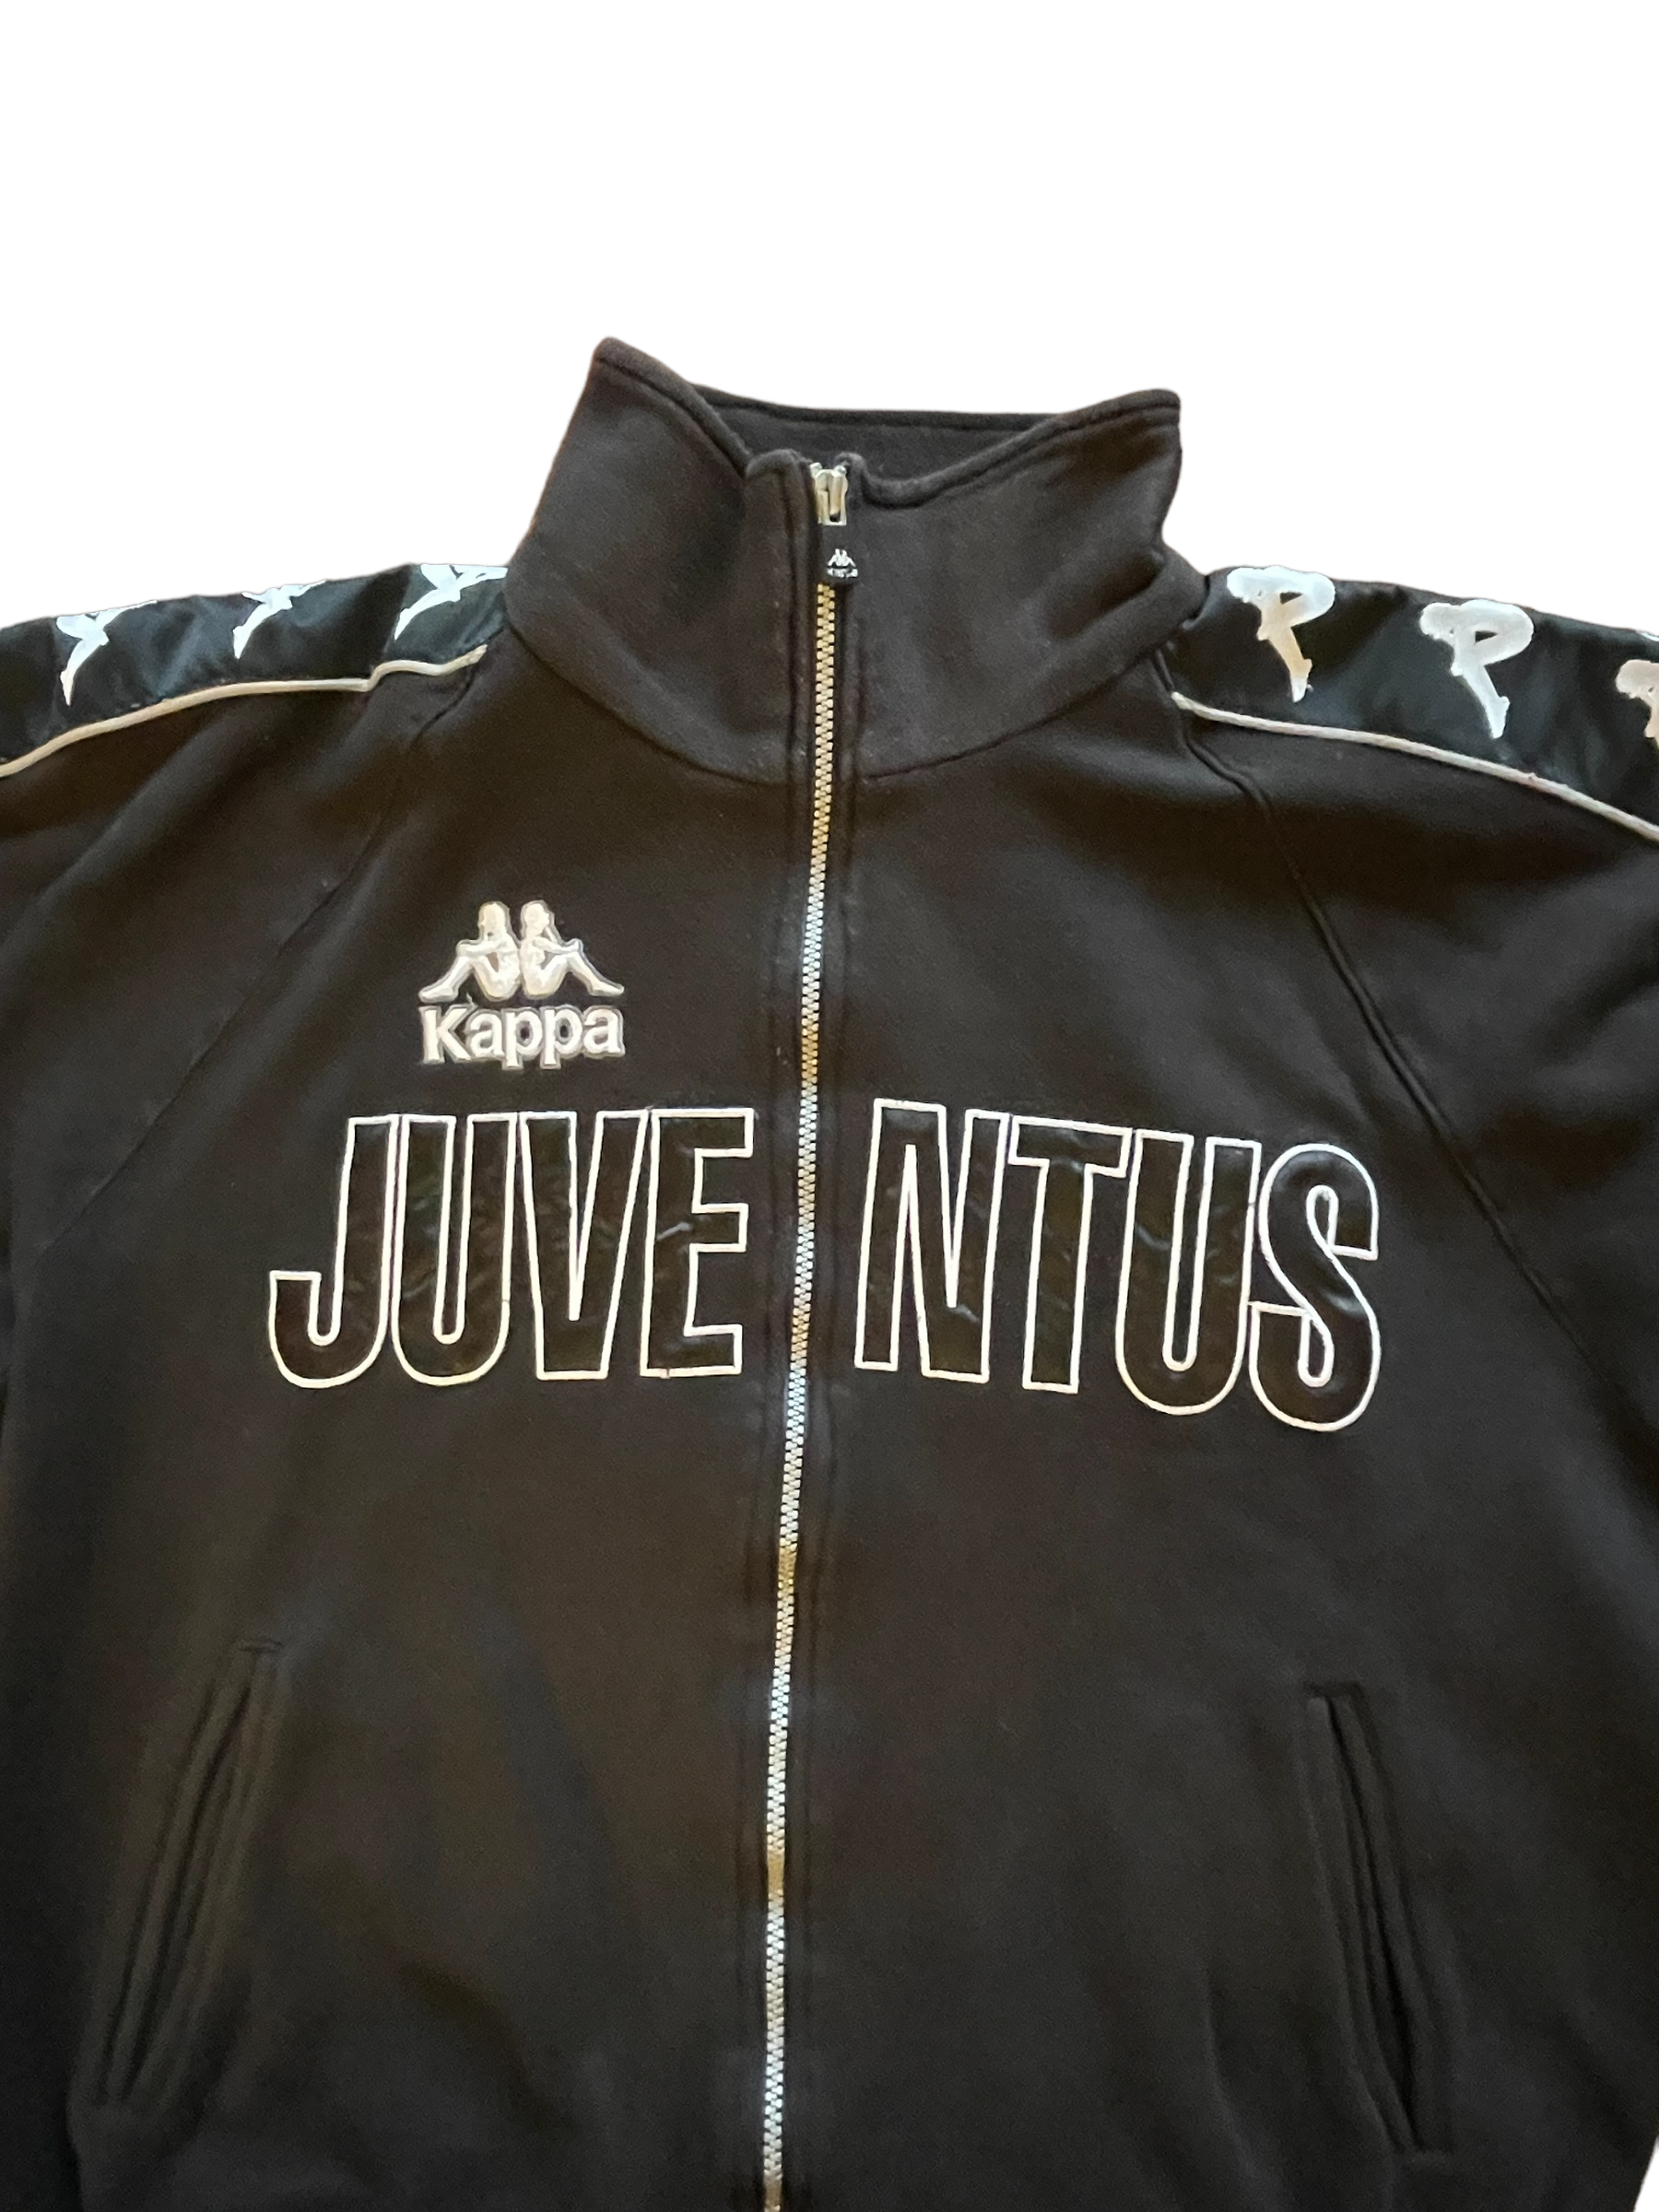 Juventus Kappa 1998 1999 2000 Jacket Black Size L